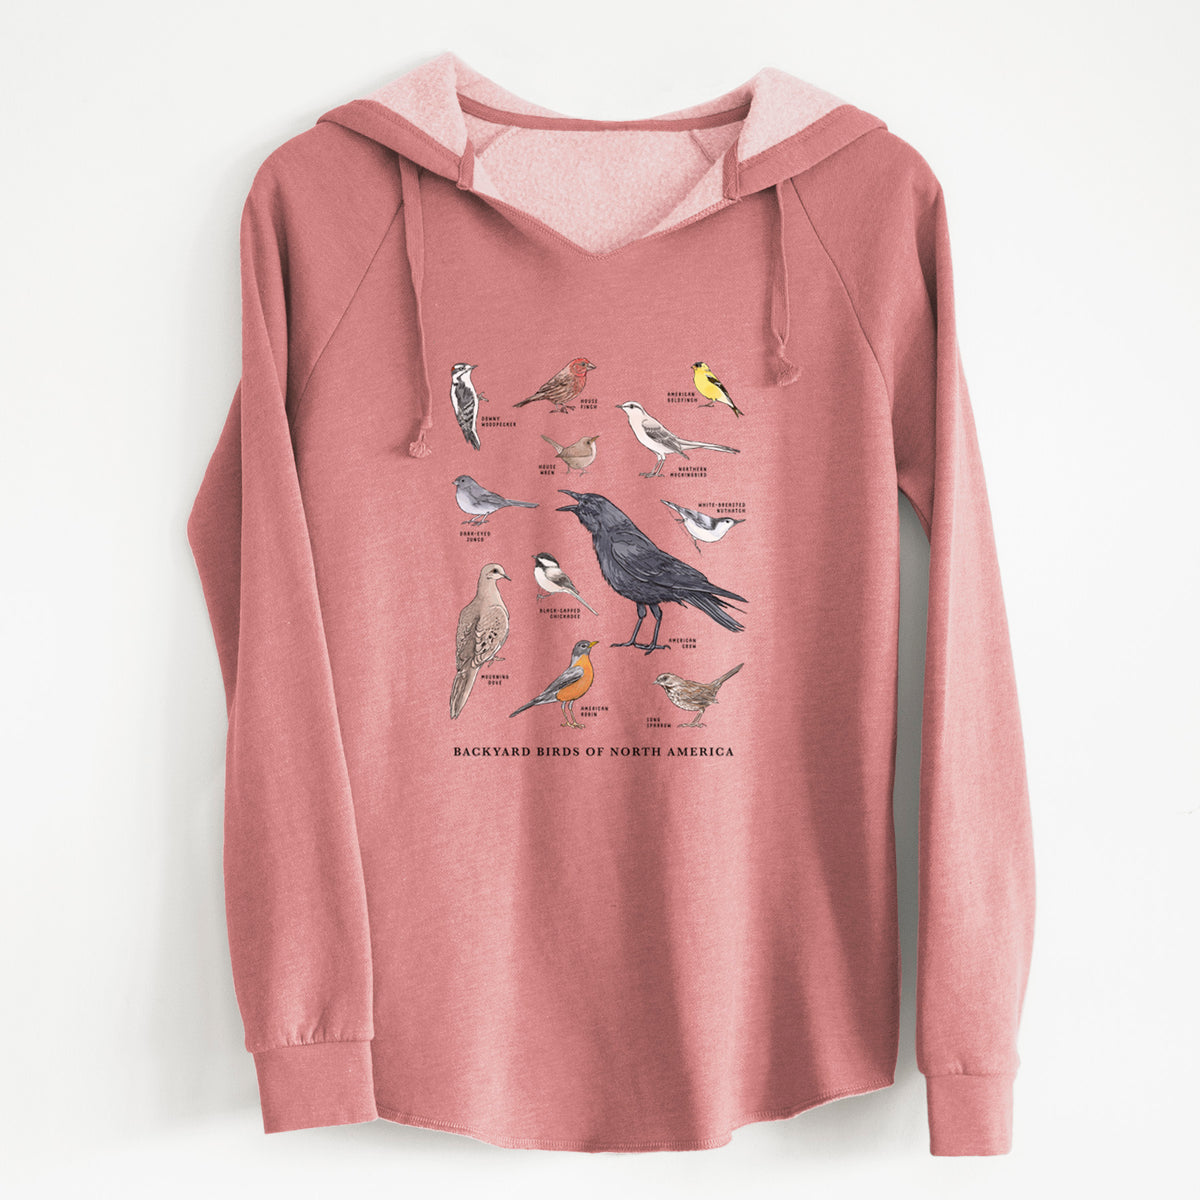 Common Backyard Birds of North America - Cali Wave Hooded Sweatshirt